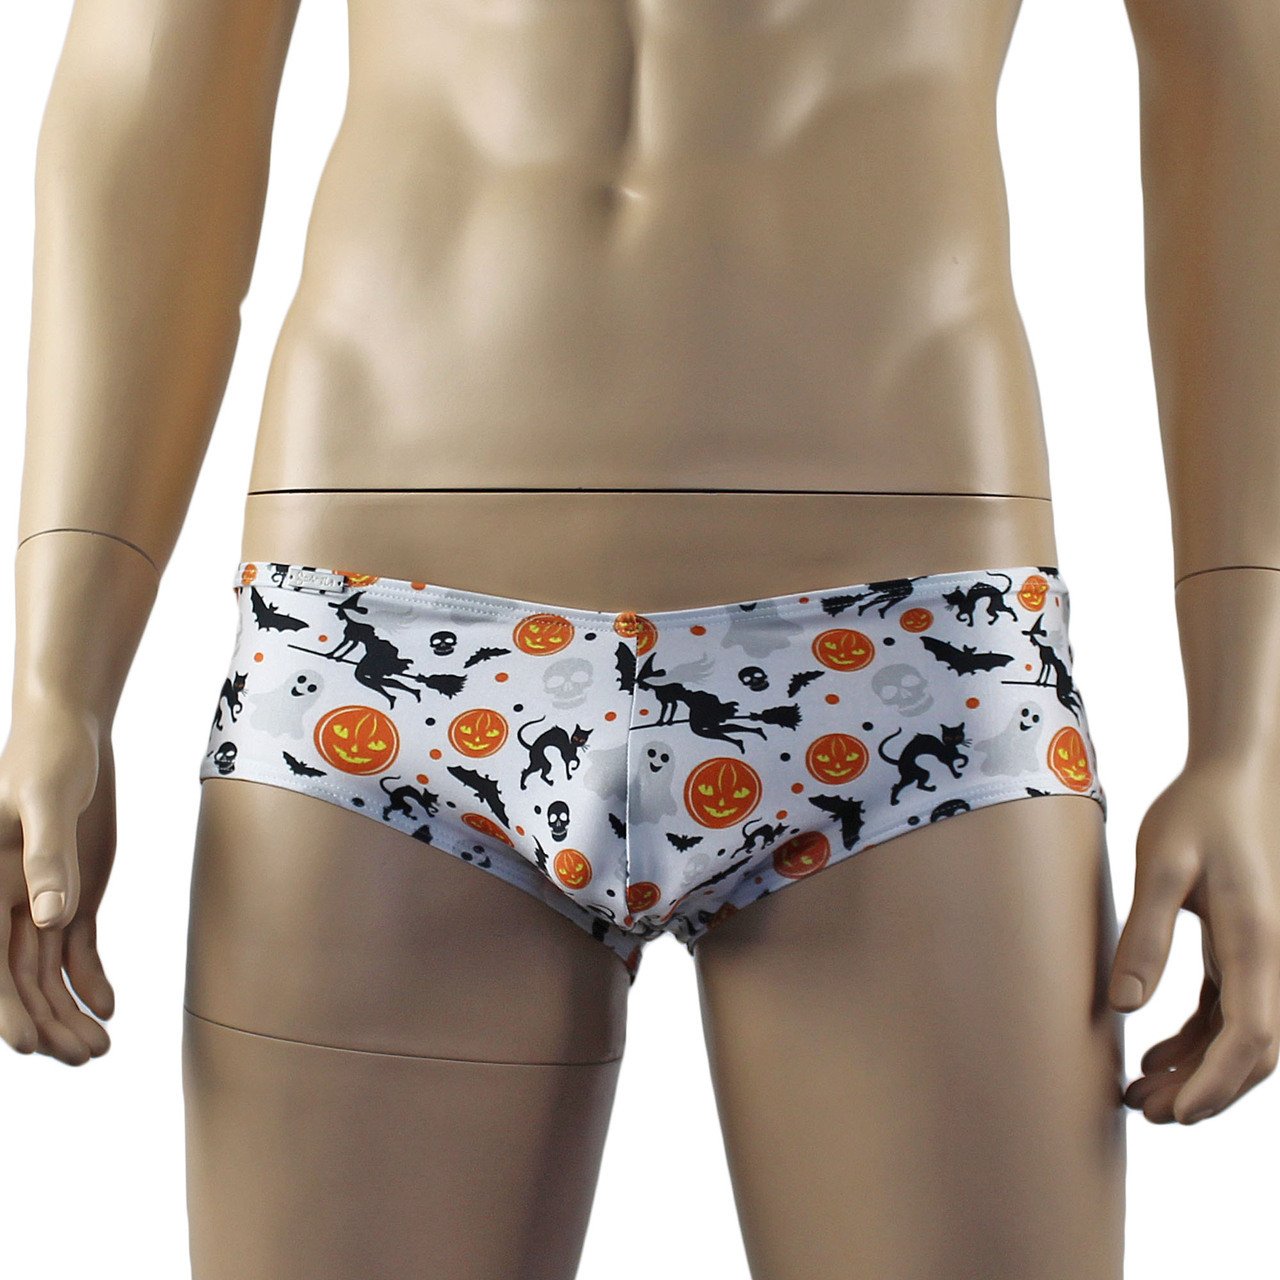 SALE - Mens Halloween Fun Boxer Briefs Underwear, Pumpkins, Witches, B